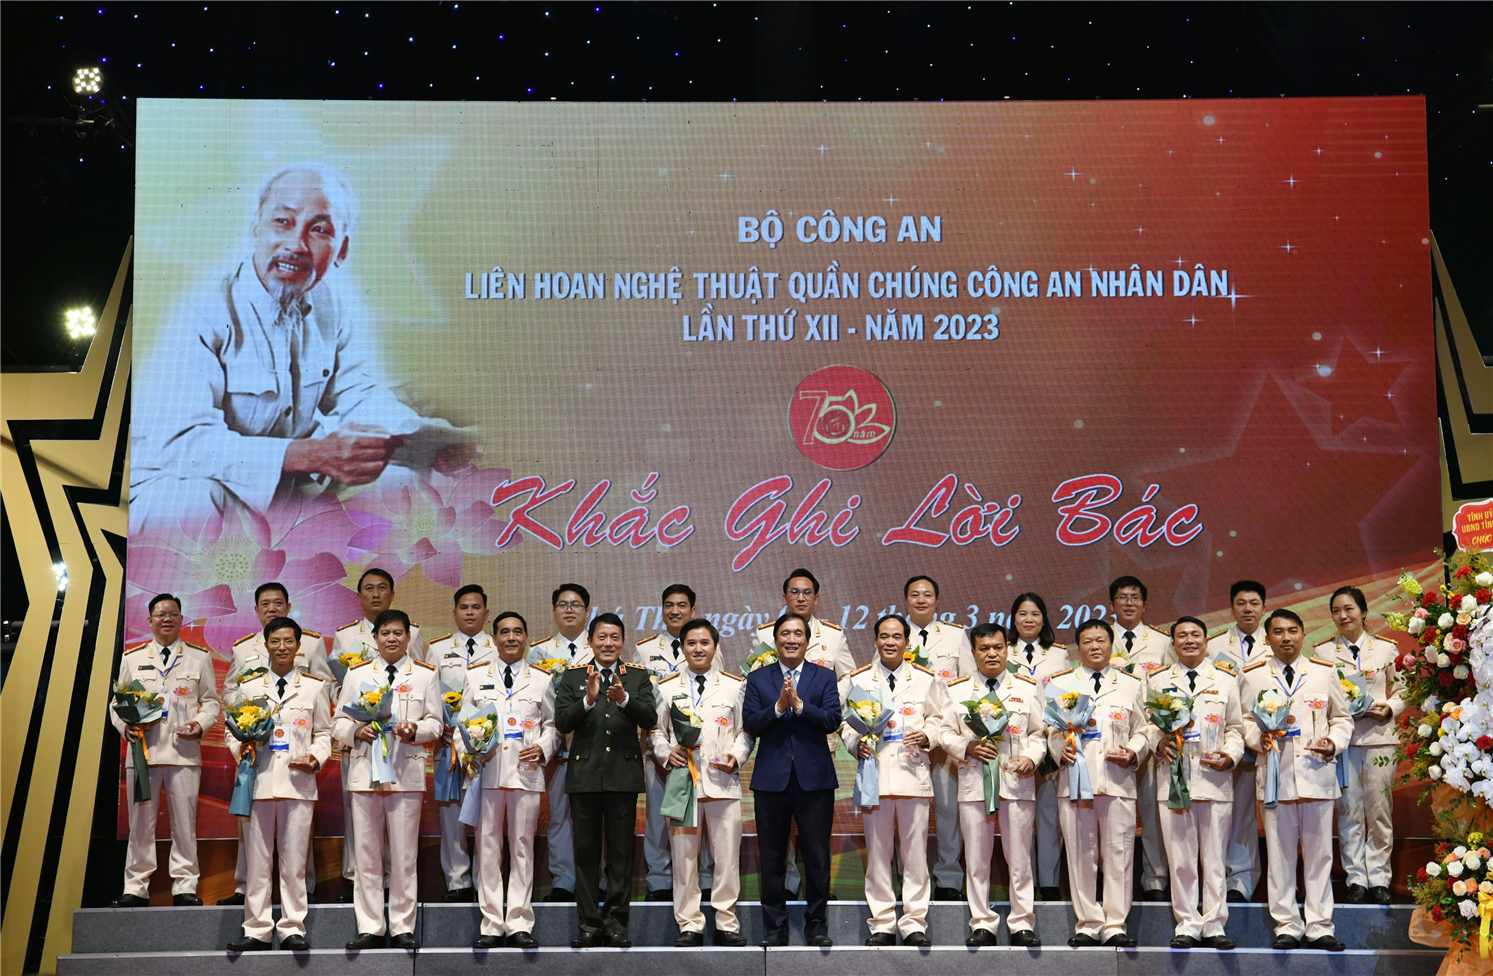 Thứ trưởng Lương Tam Quang; đồng chí Bùi Minh Châu - Bí thư Tỉnh ủy Phú Thọ tặng hoa và kỷ niệm chương tặng các Đoàn tham gia Liên hoan